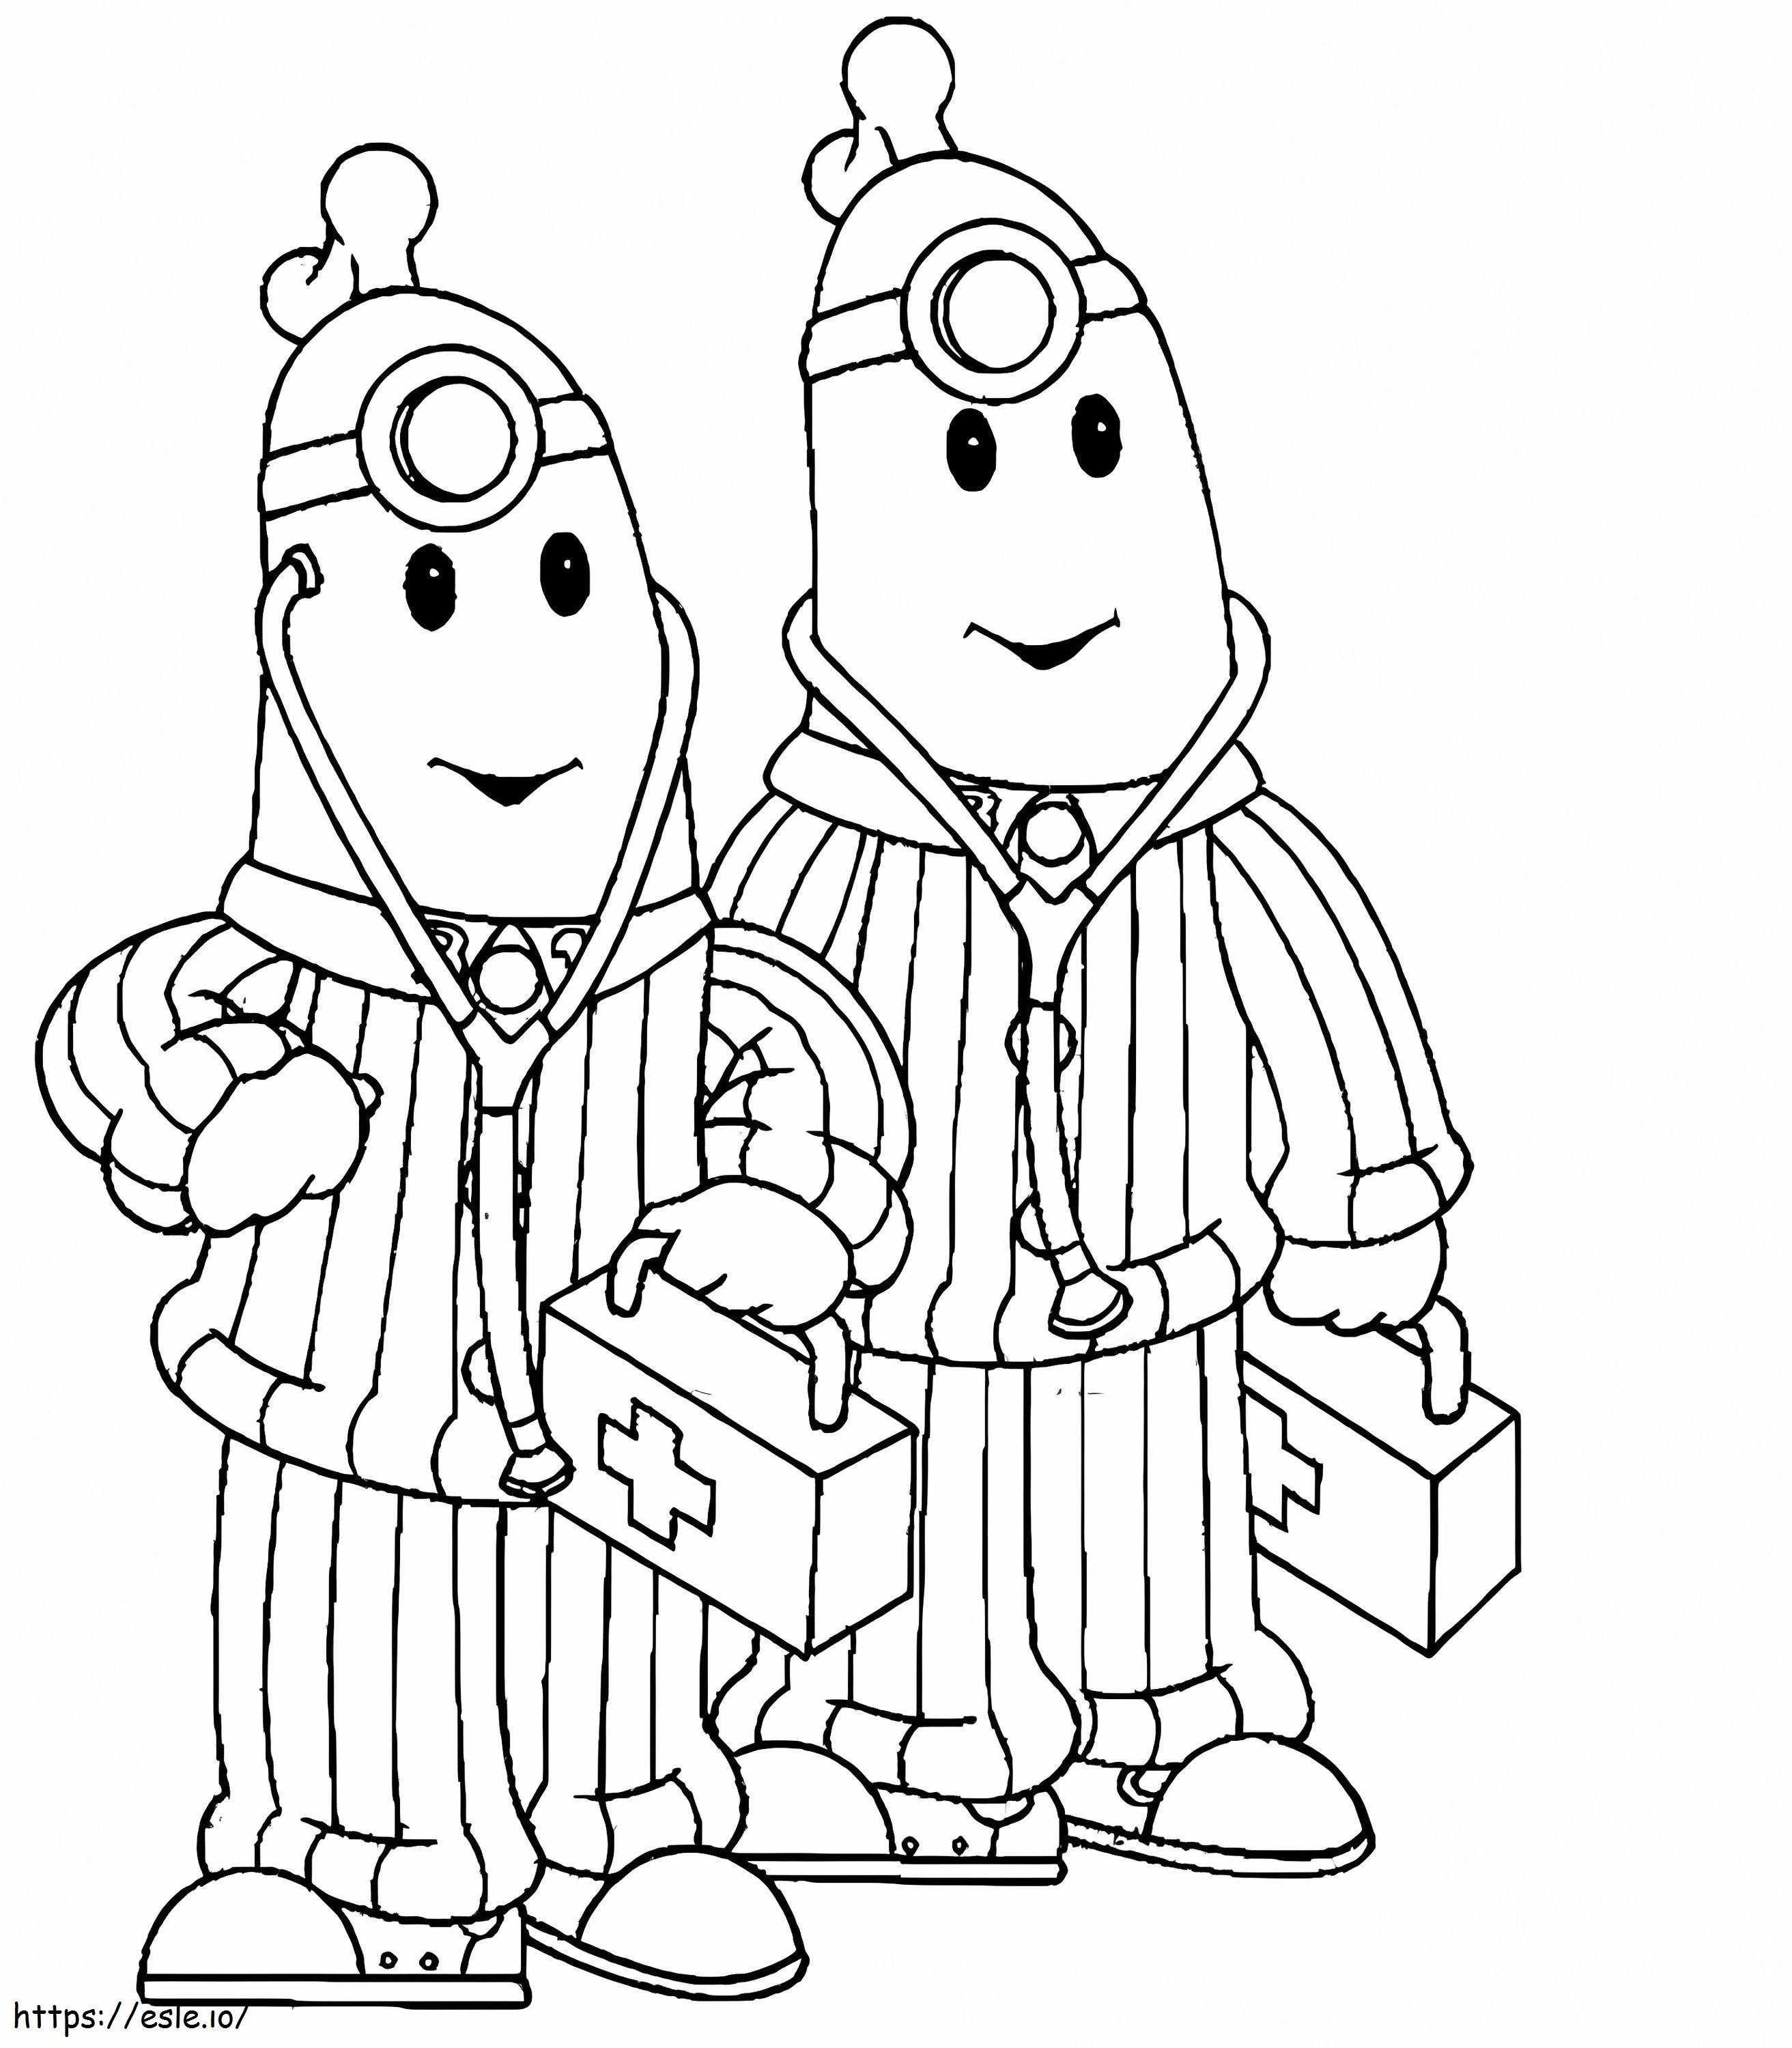 Doctors Bananas In Pyjamas coloring page